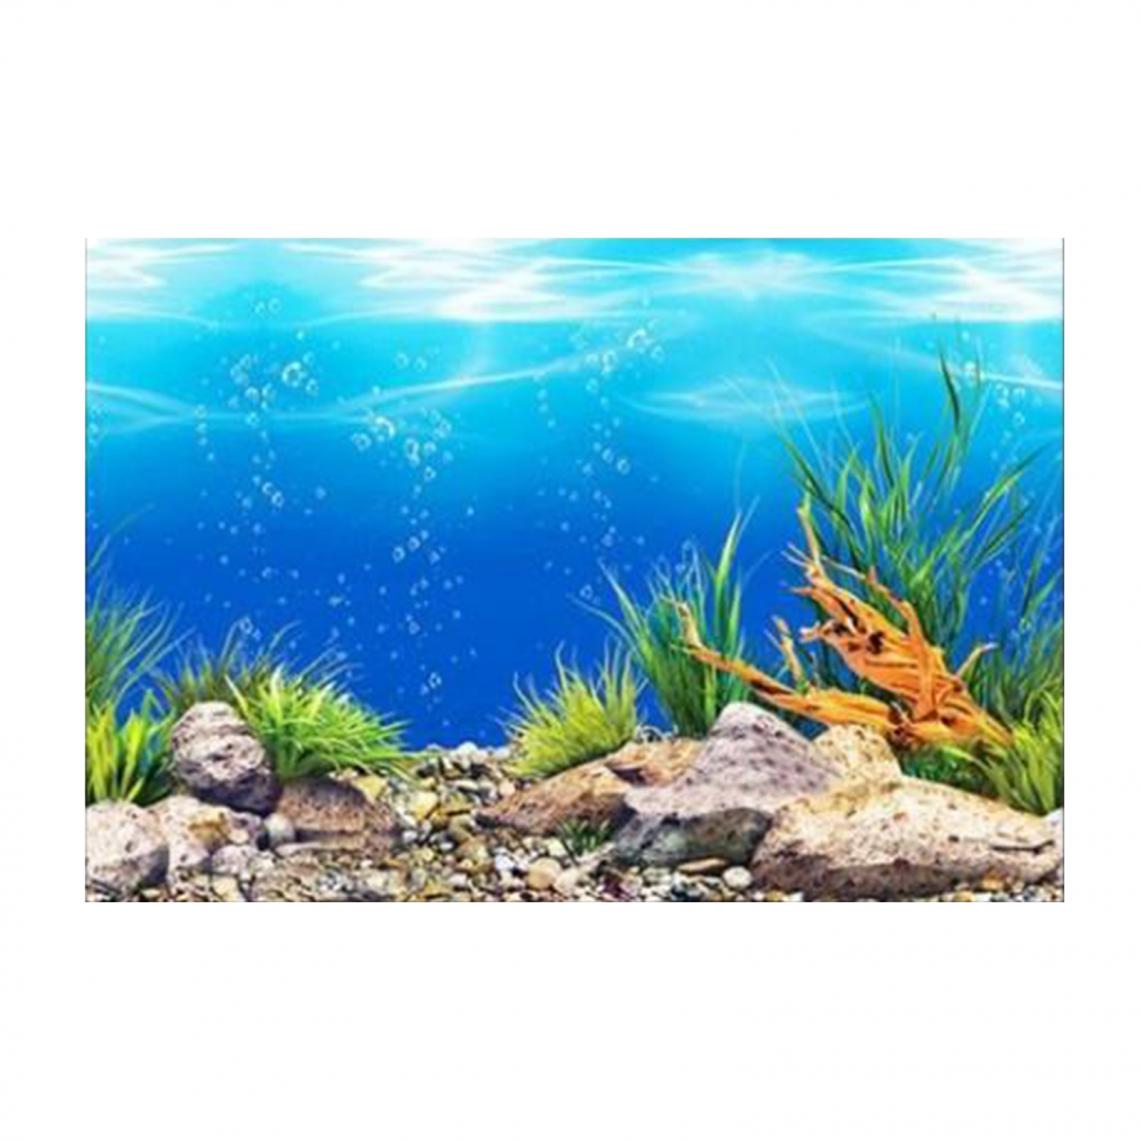 marque generique - Affiche De Fond D'aquarium De PVC D'océan Paysage De Décoration De Réservoir De Poissons 60x102cm - Décoration aquarium